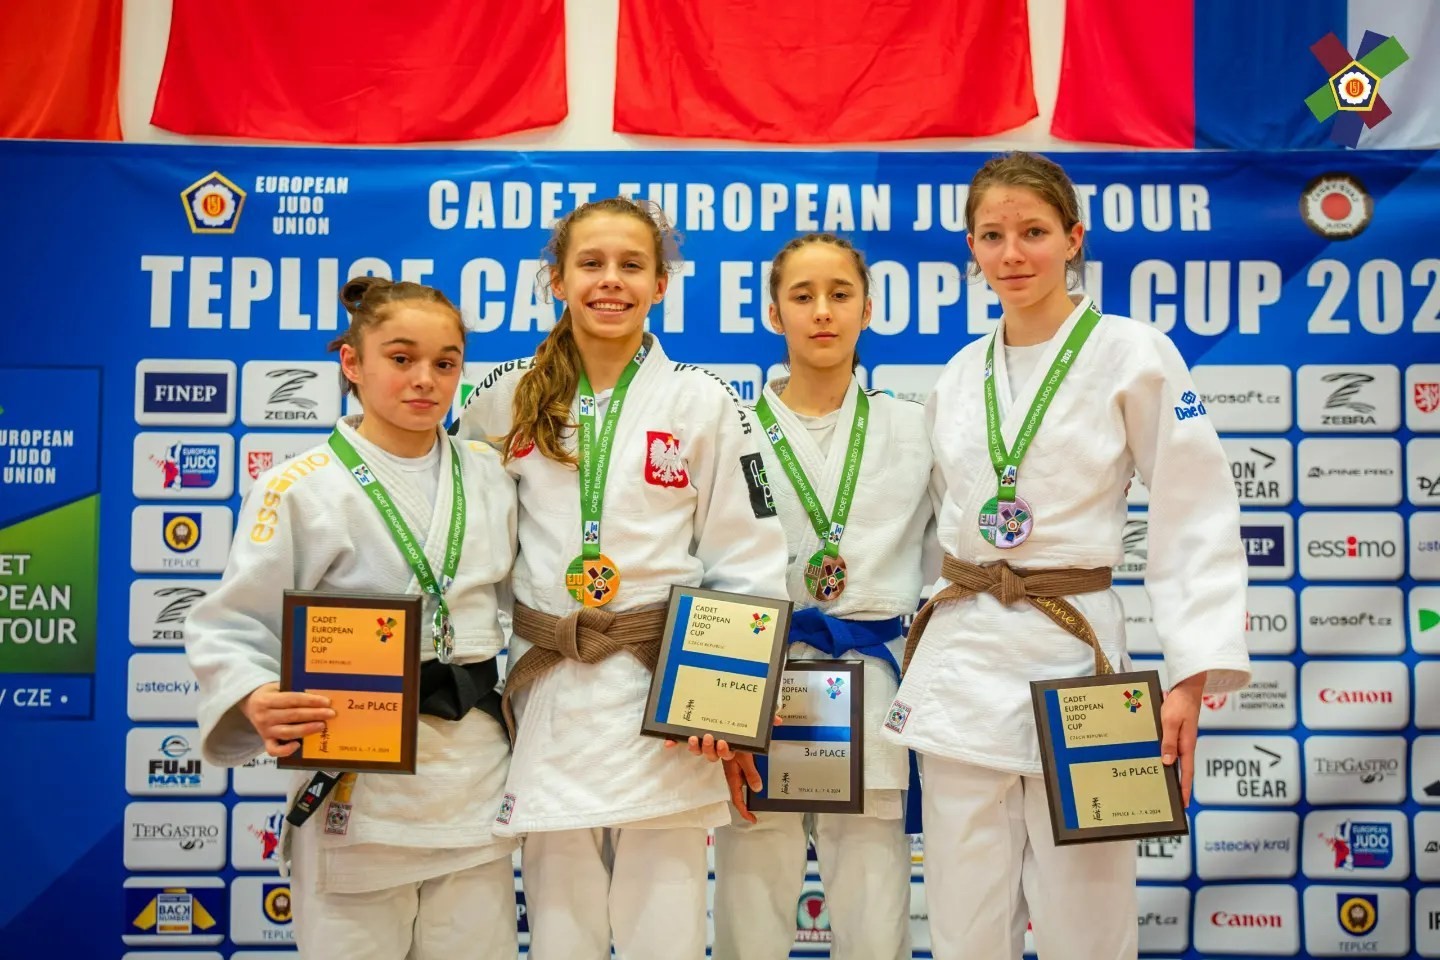 Azerbaijani judoka won silver in the European Cup